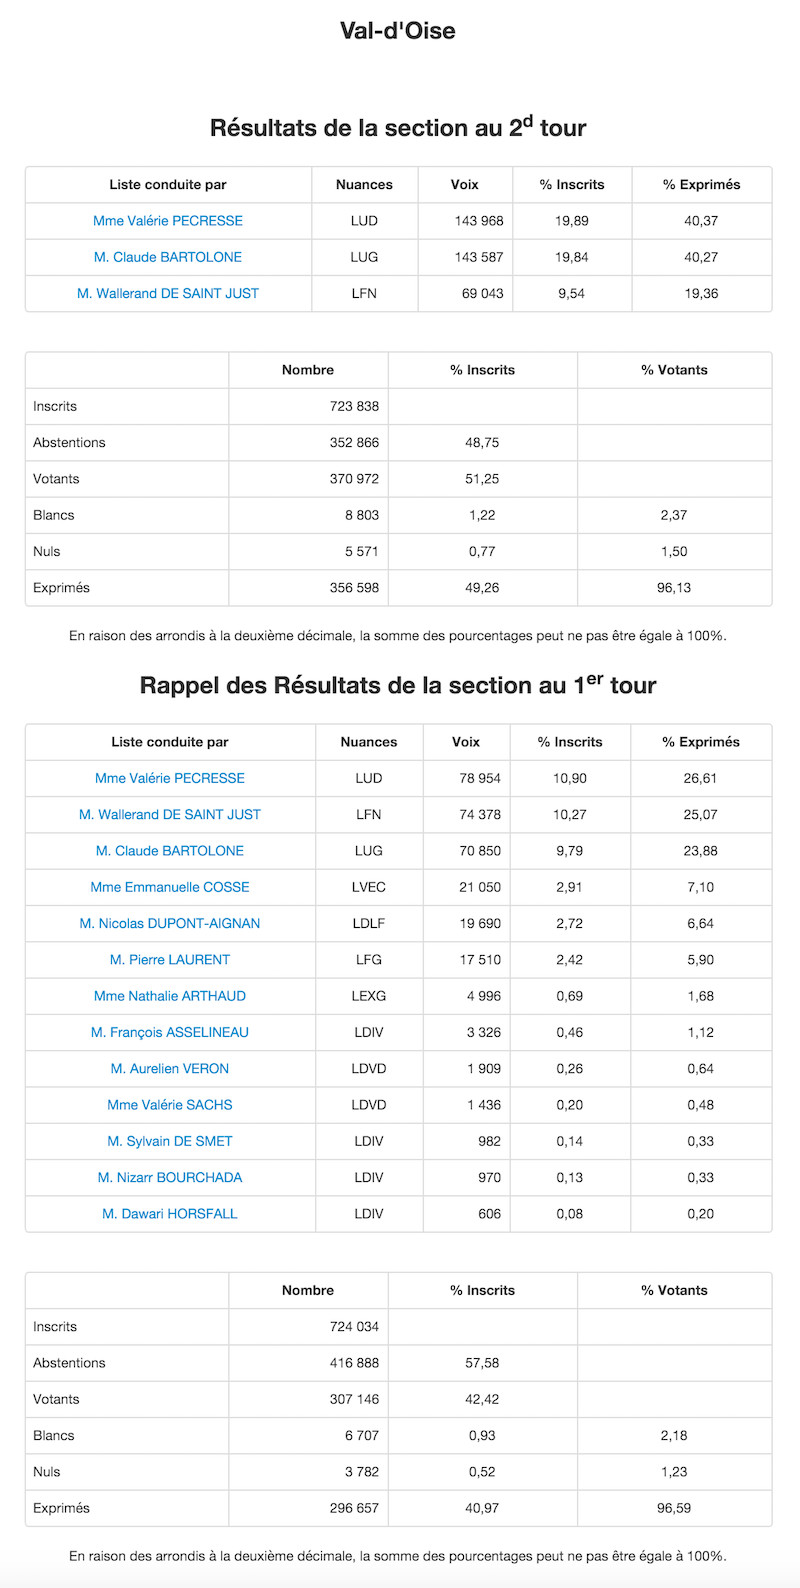 Régionales 2015 - 2nd et 1er tour dans le Val d'Oise © Ministère de l'Intérieur